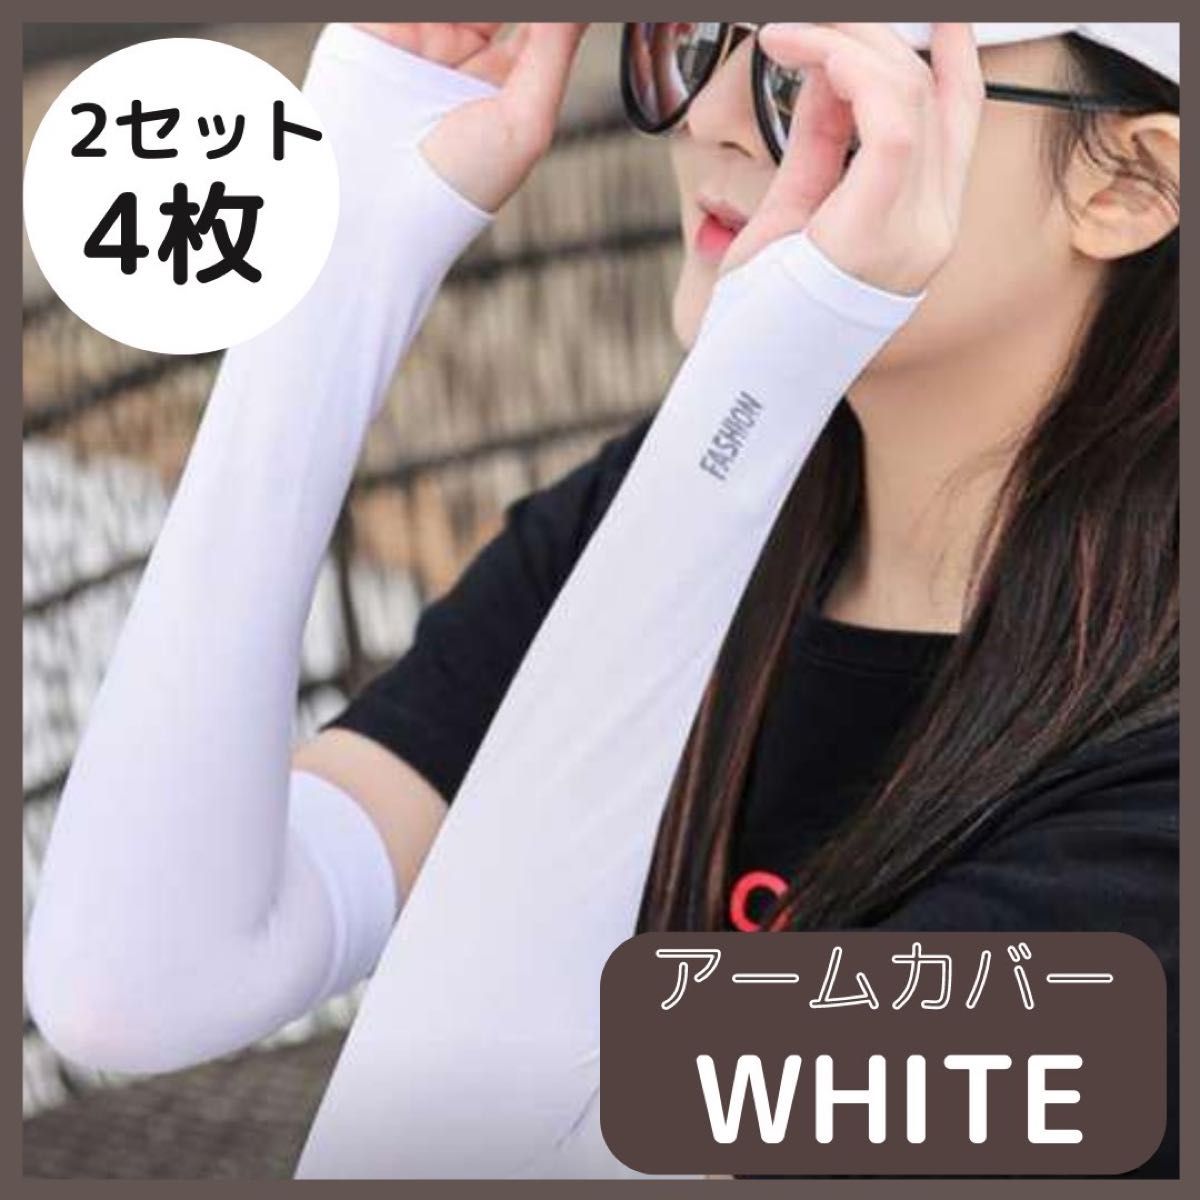 超高品質で人気の アームカバー ホワイト 紫外線 UVカット 白 4枚 日焼け防止 冷却 男女兼用